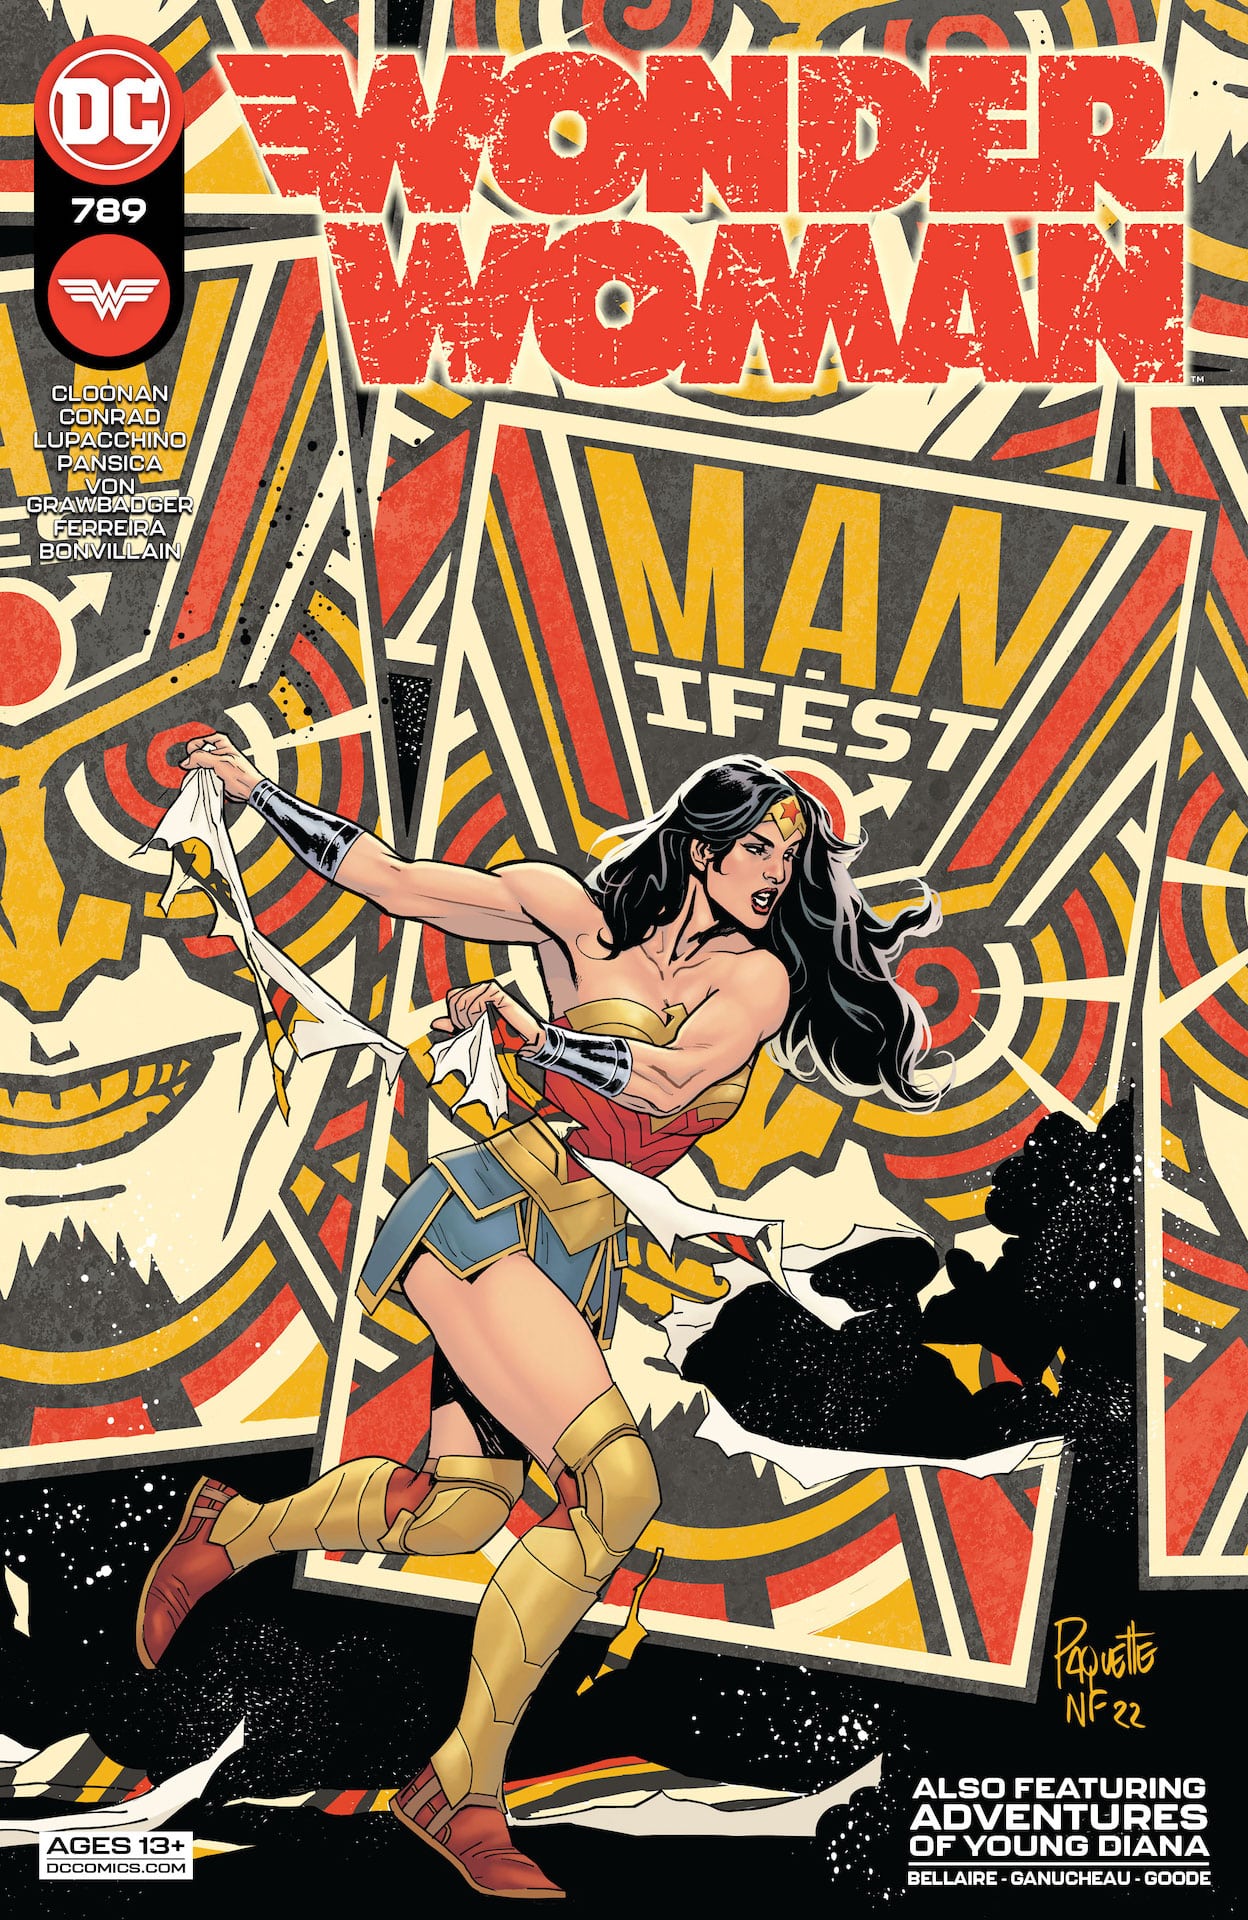 DC Preview: Wonder Woman #789